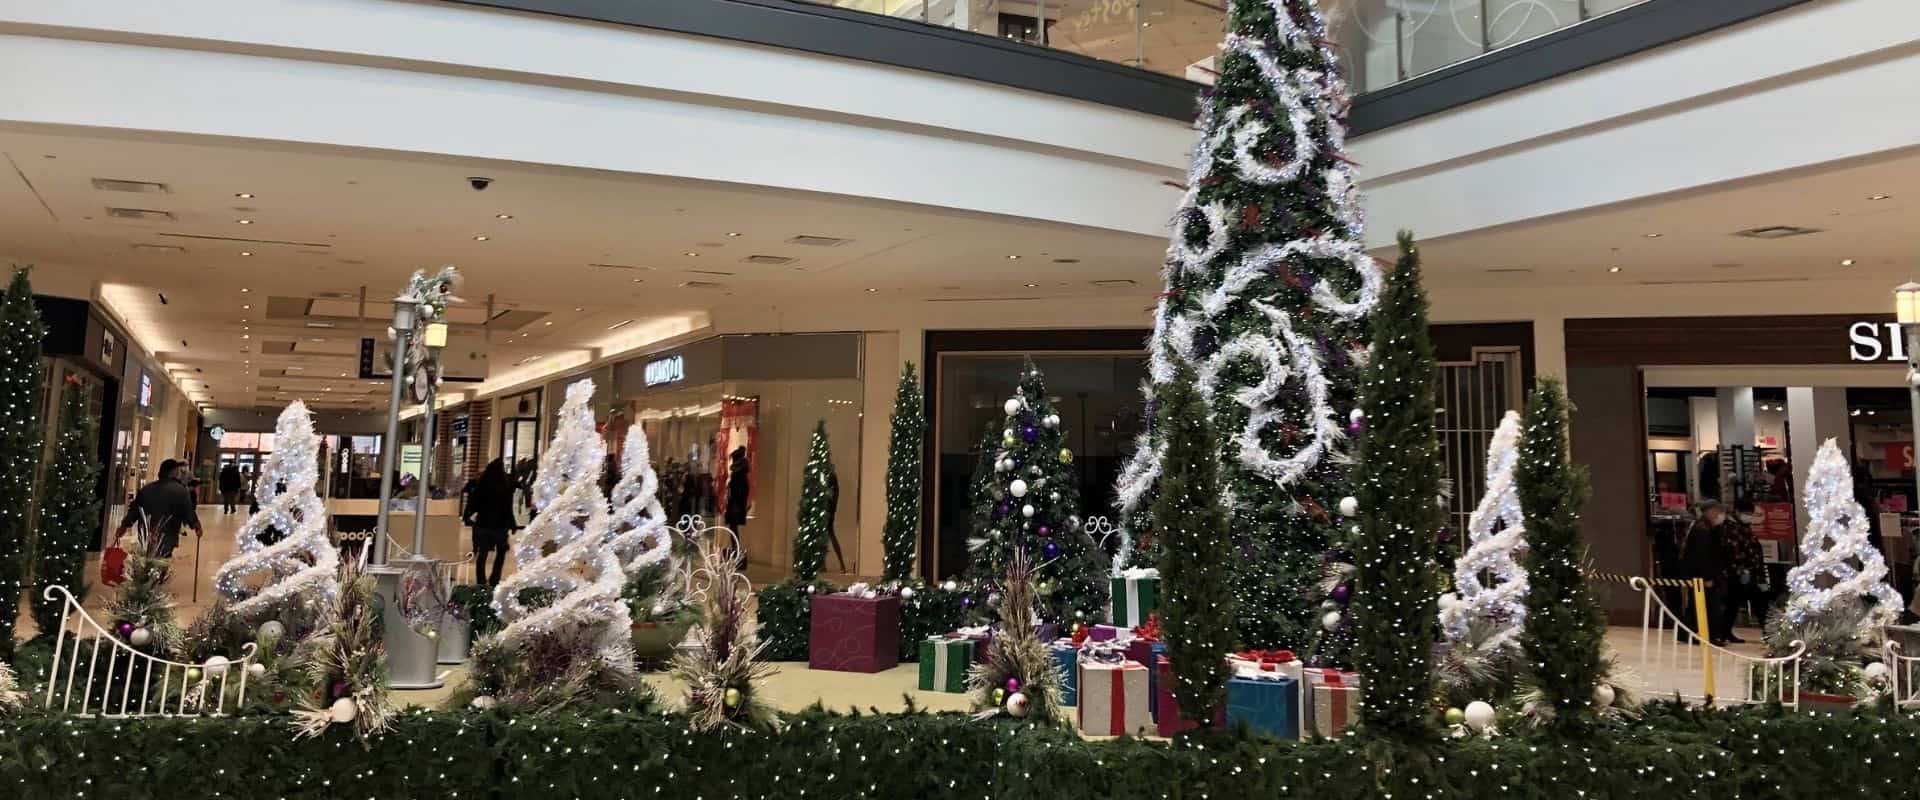 Décor de Noël dans un centre commercial